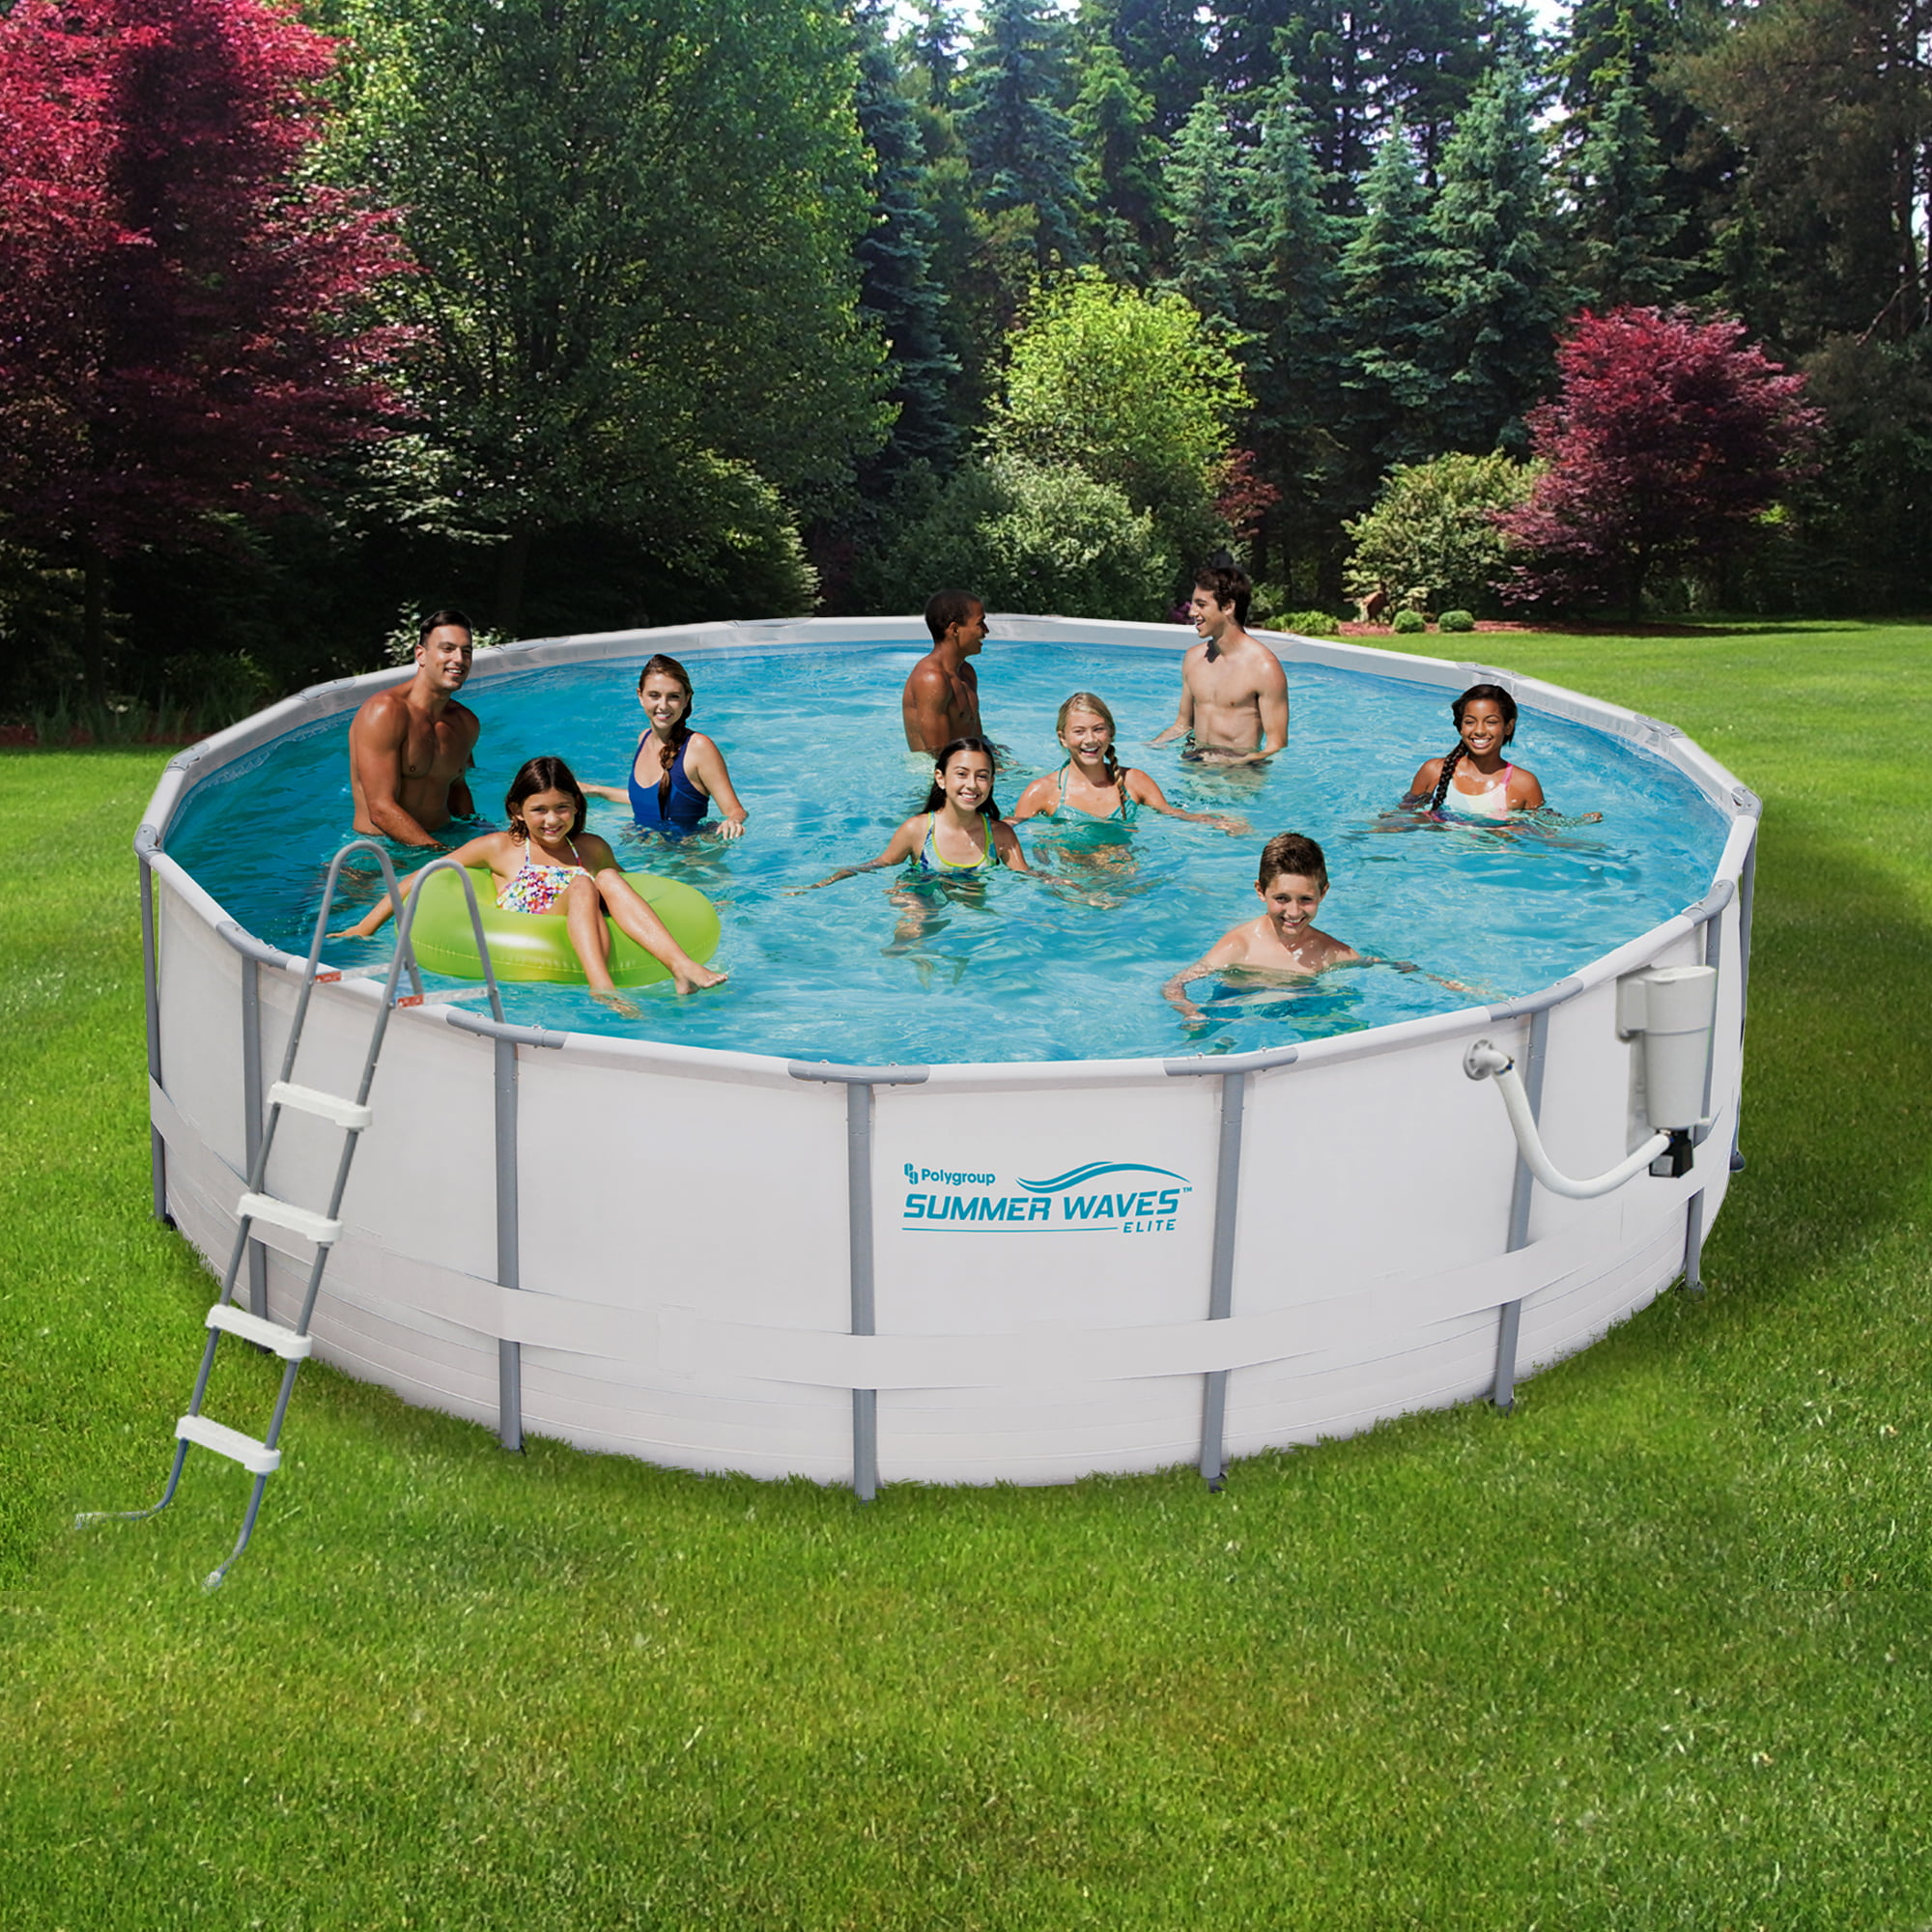 Pool round